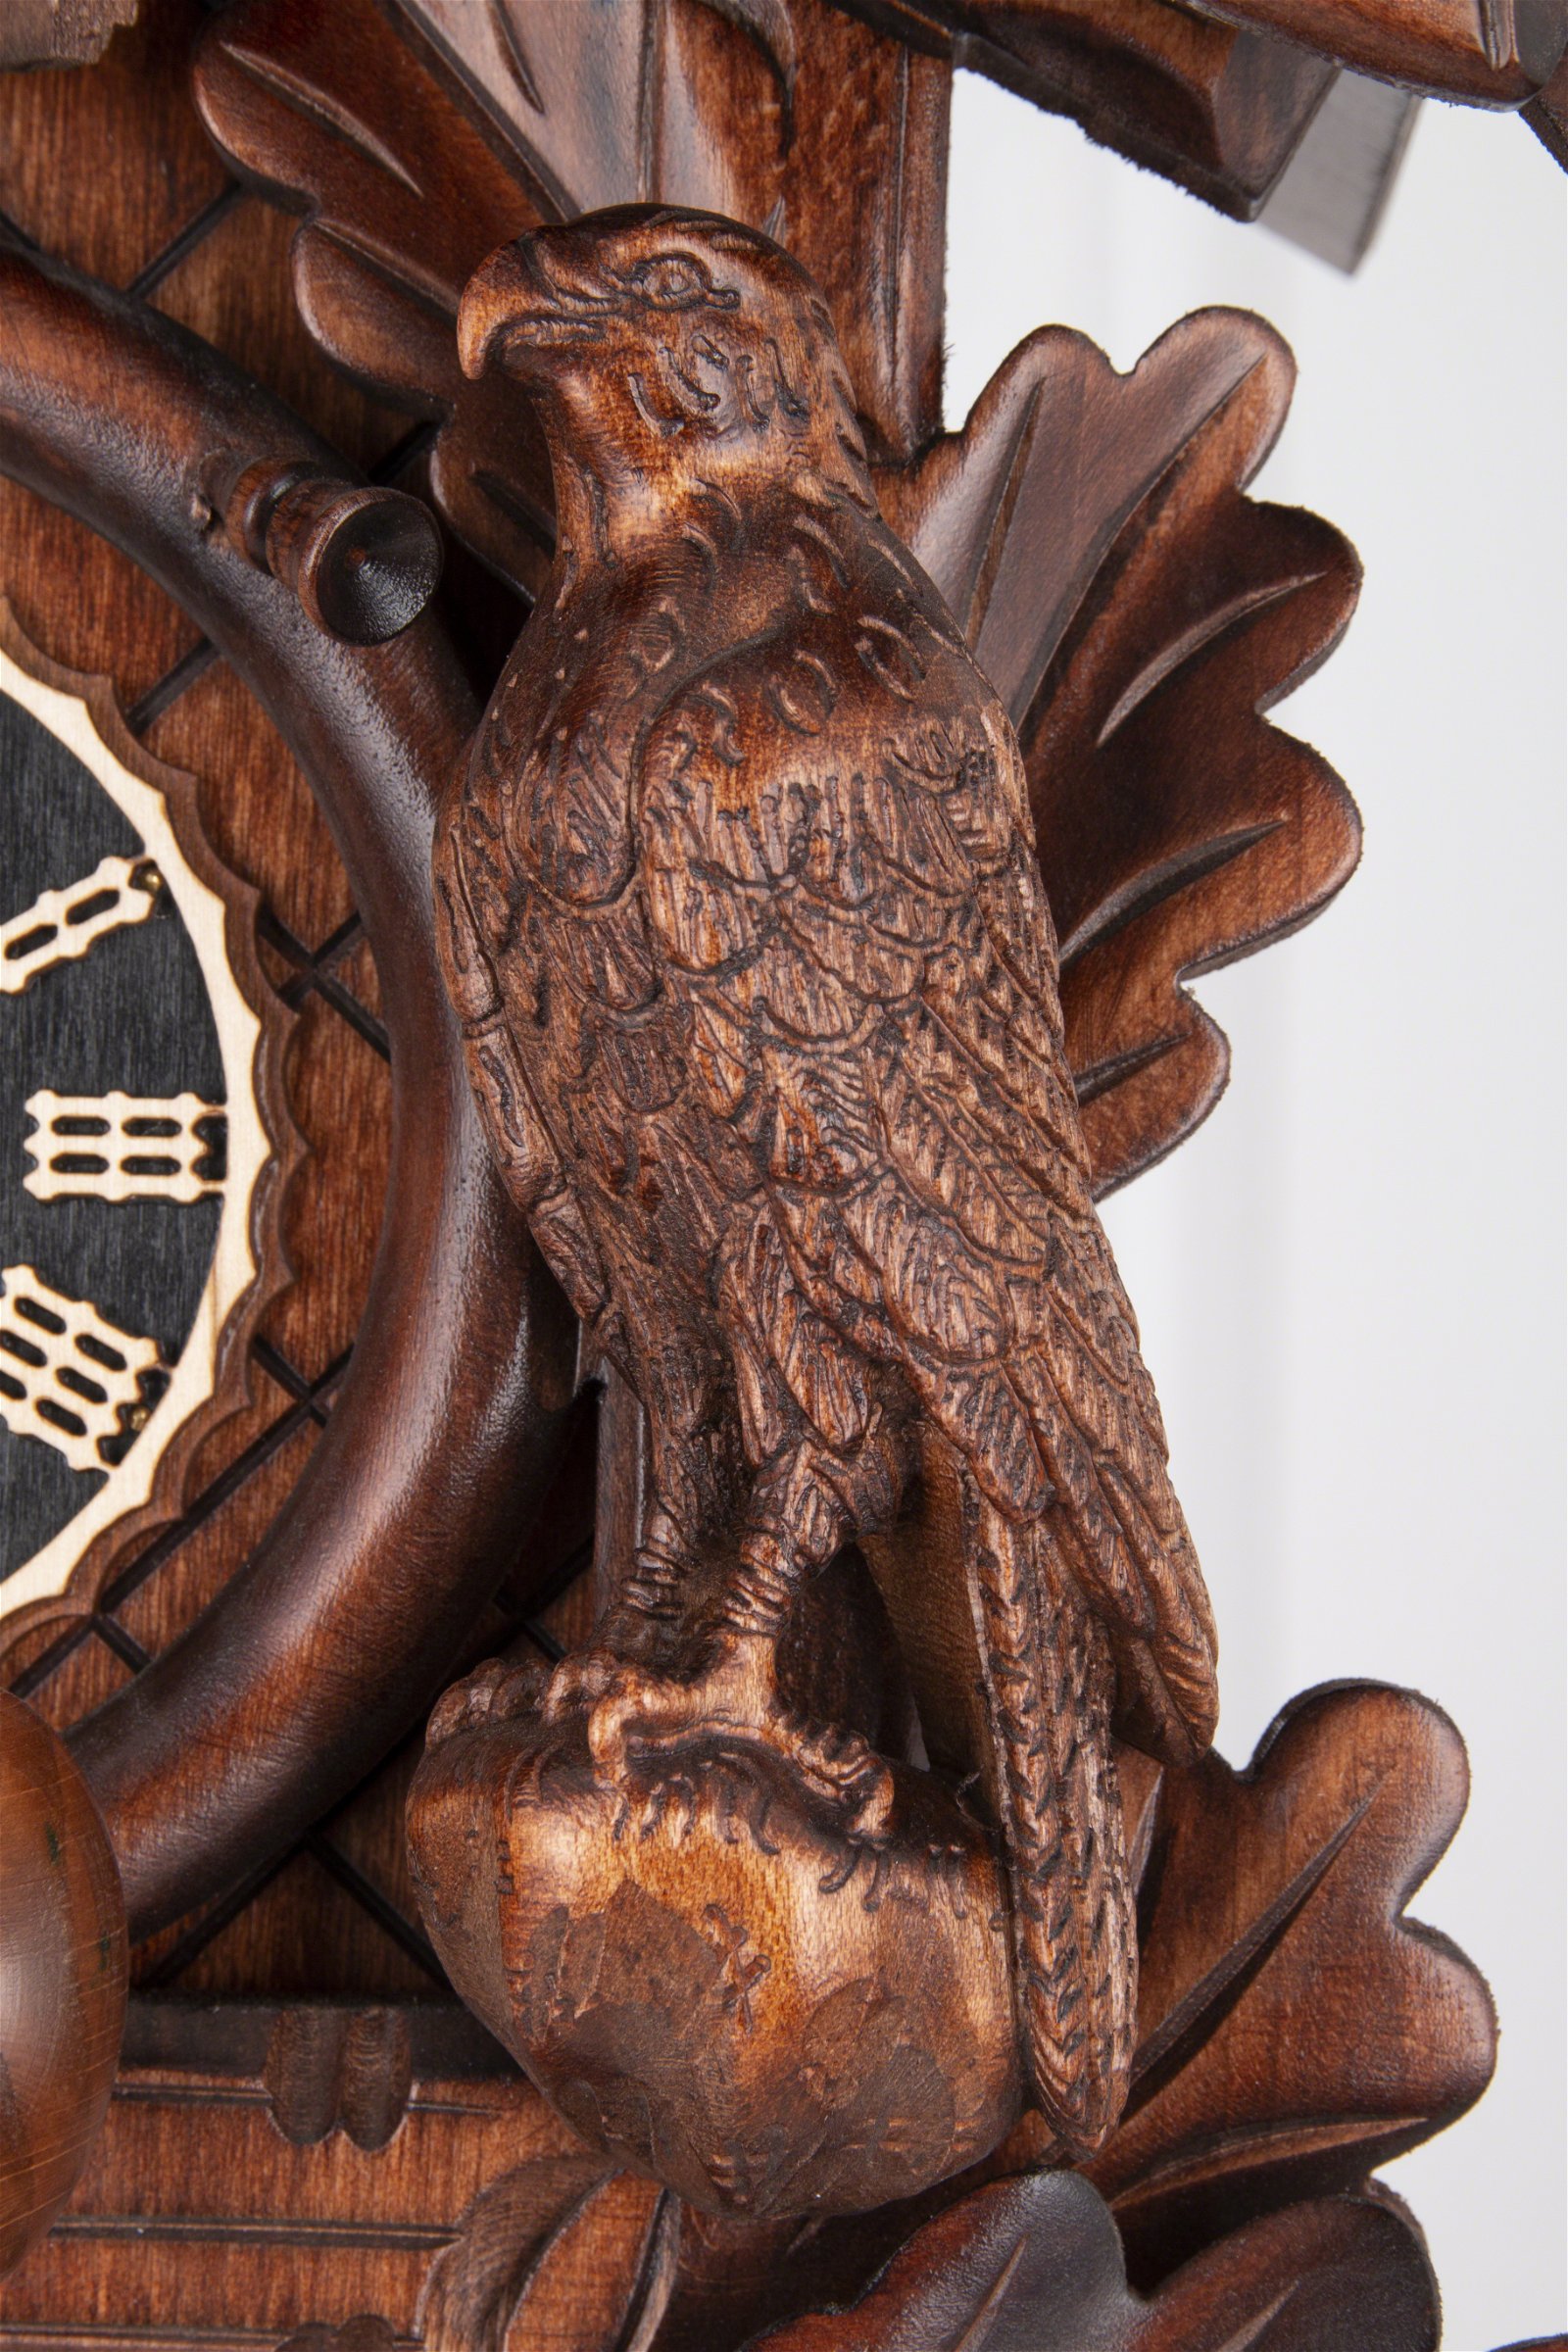 Reloj de cuco estilo “Madera tallada” movimiento mecánico de 1 día 40cm de Hönes